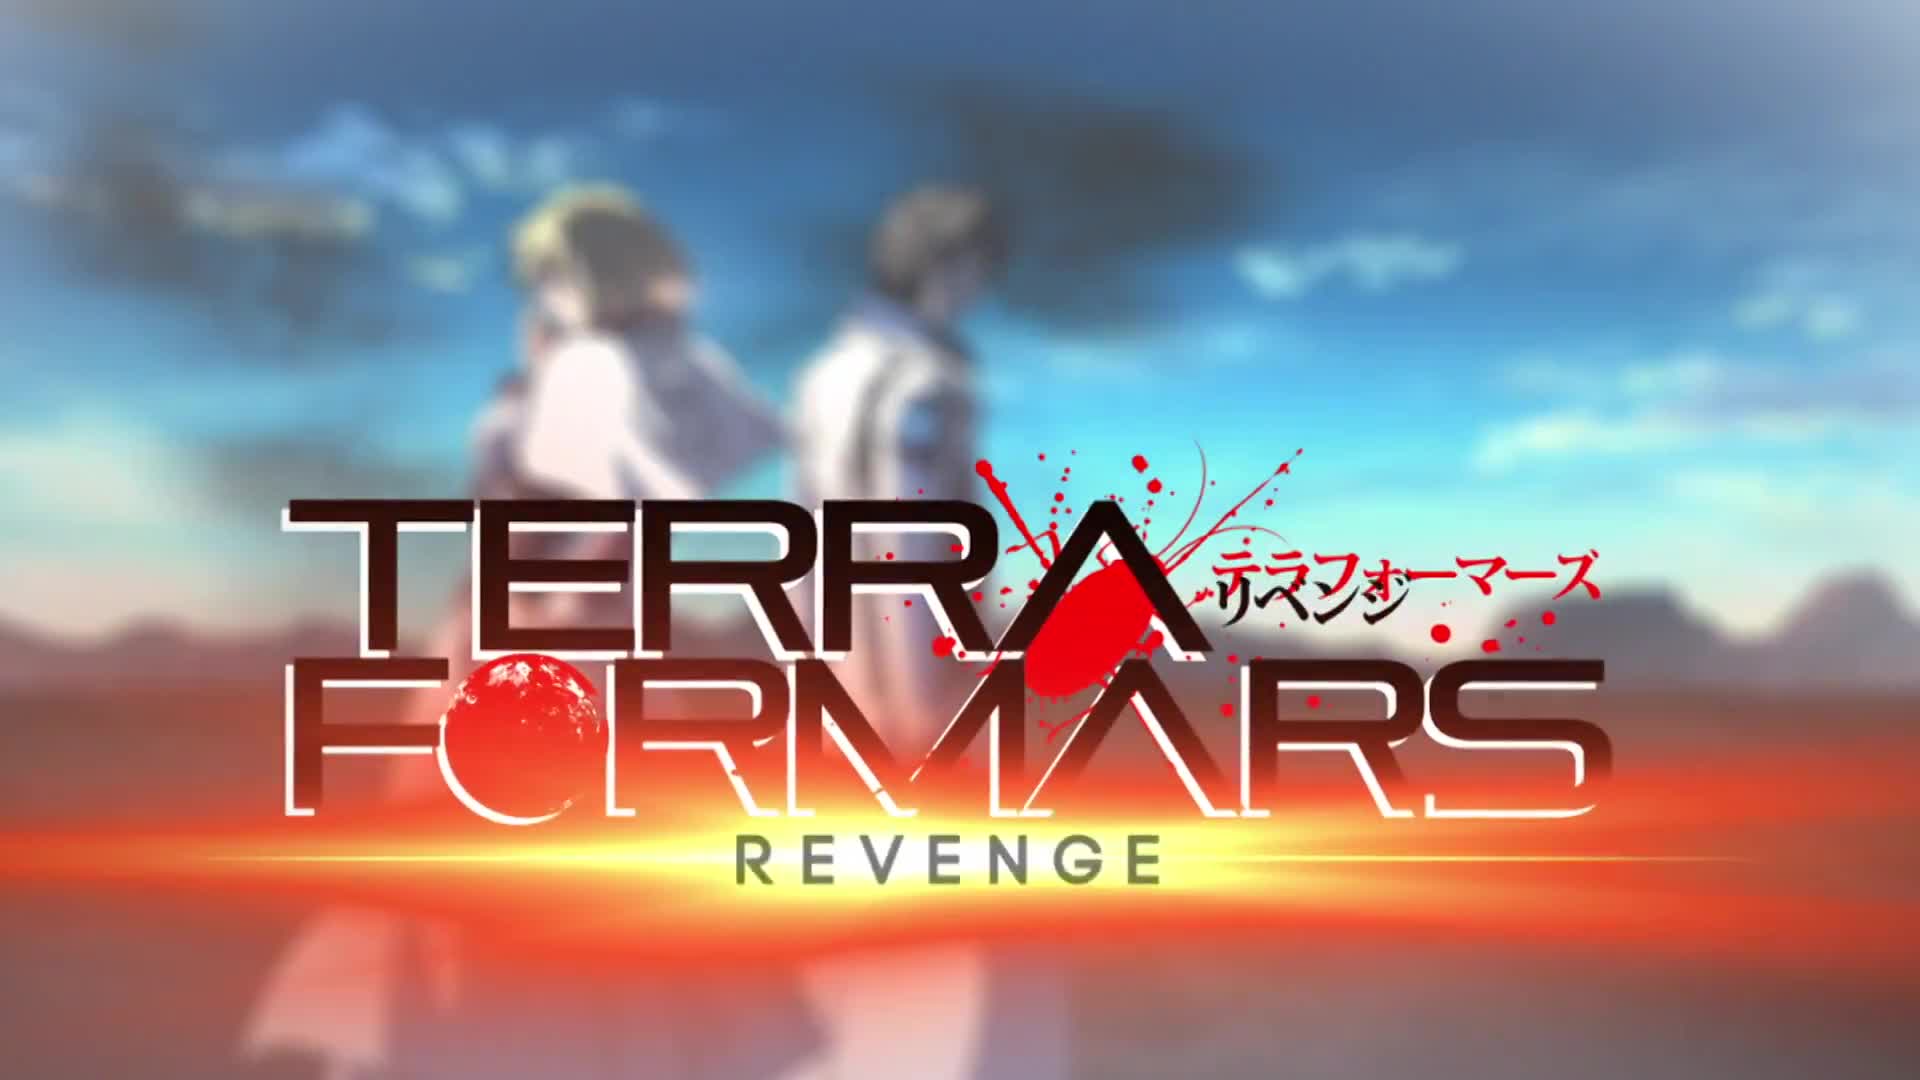 Terra Formars Revenge